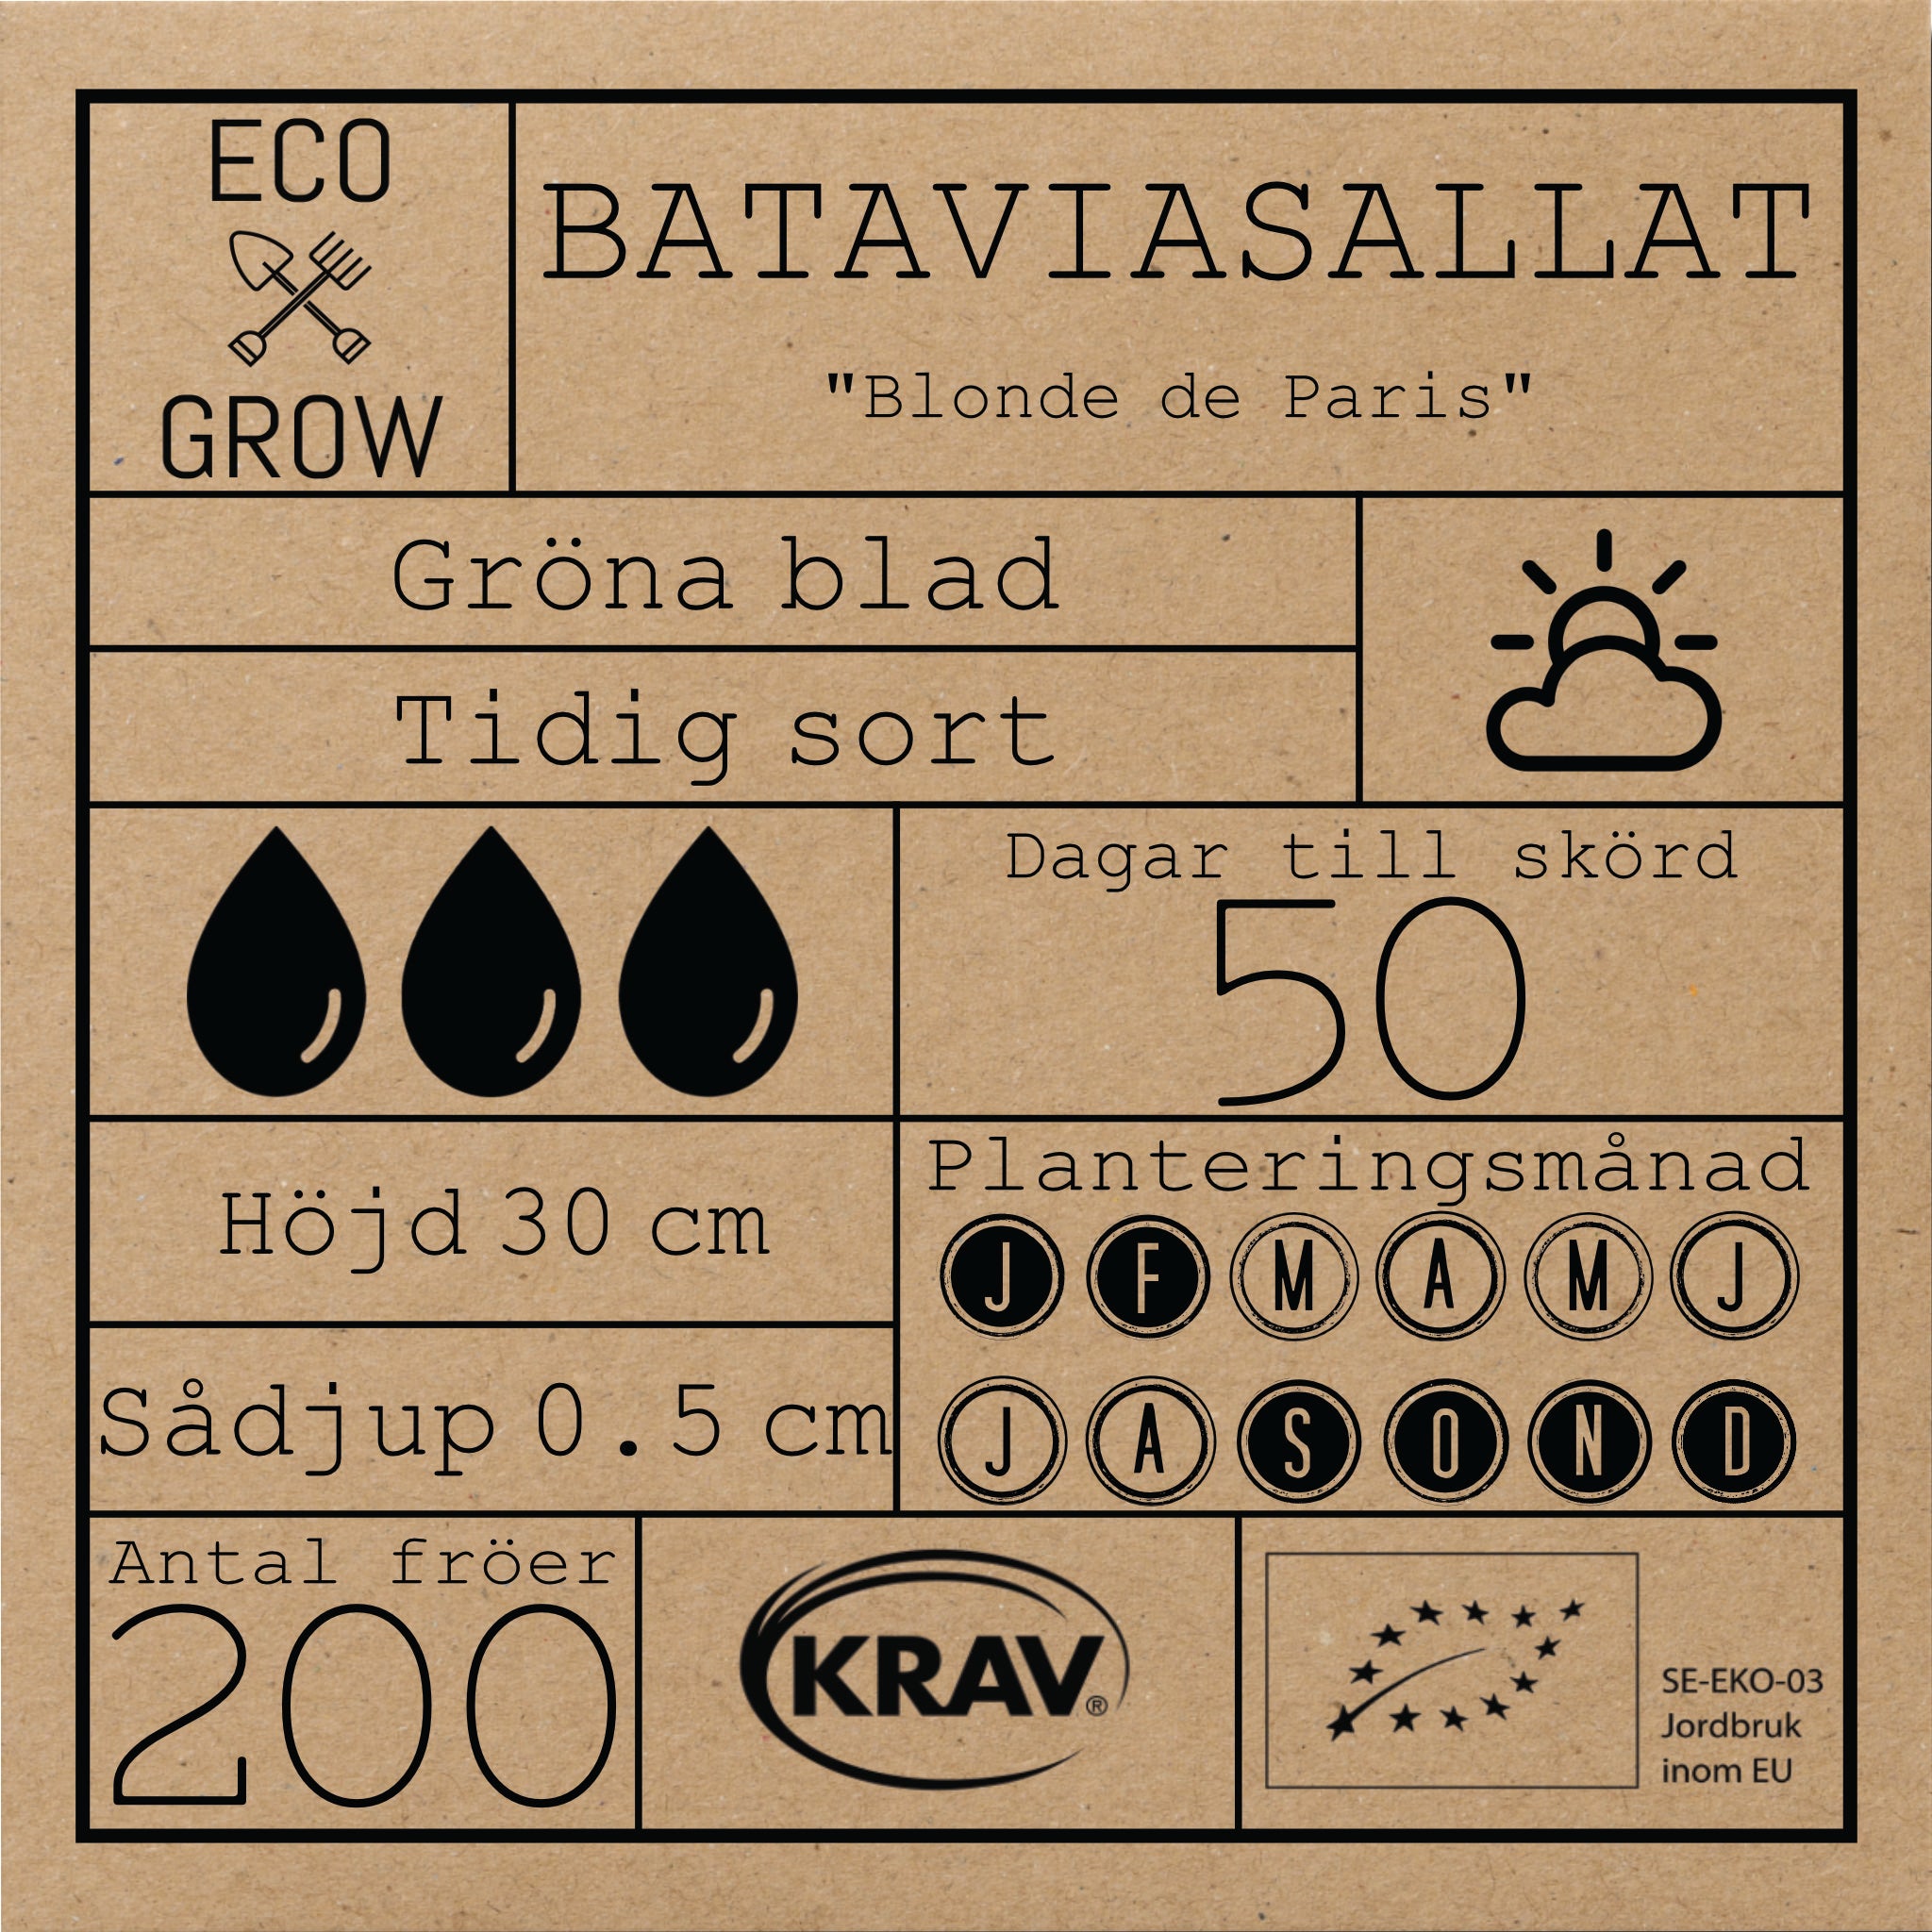 Bataviasallat